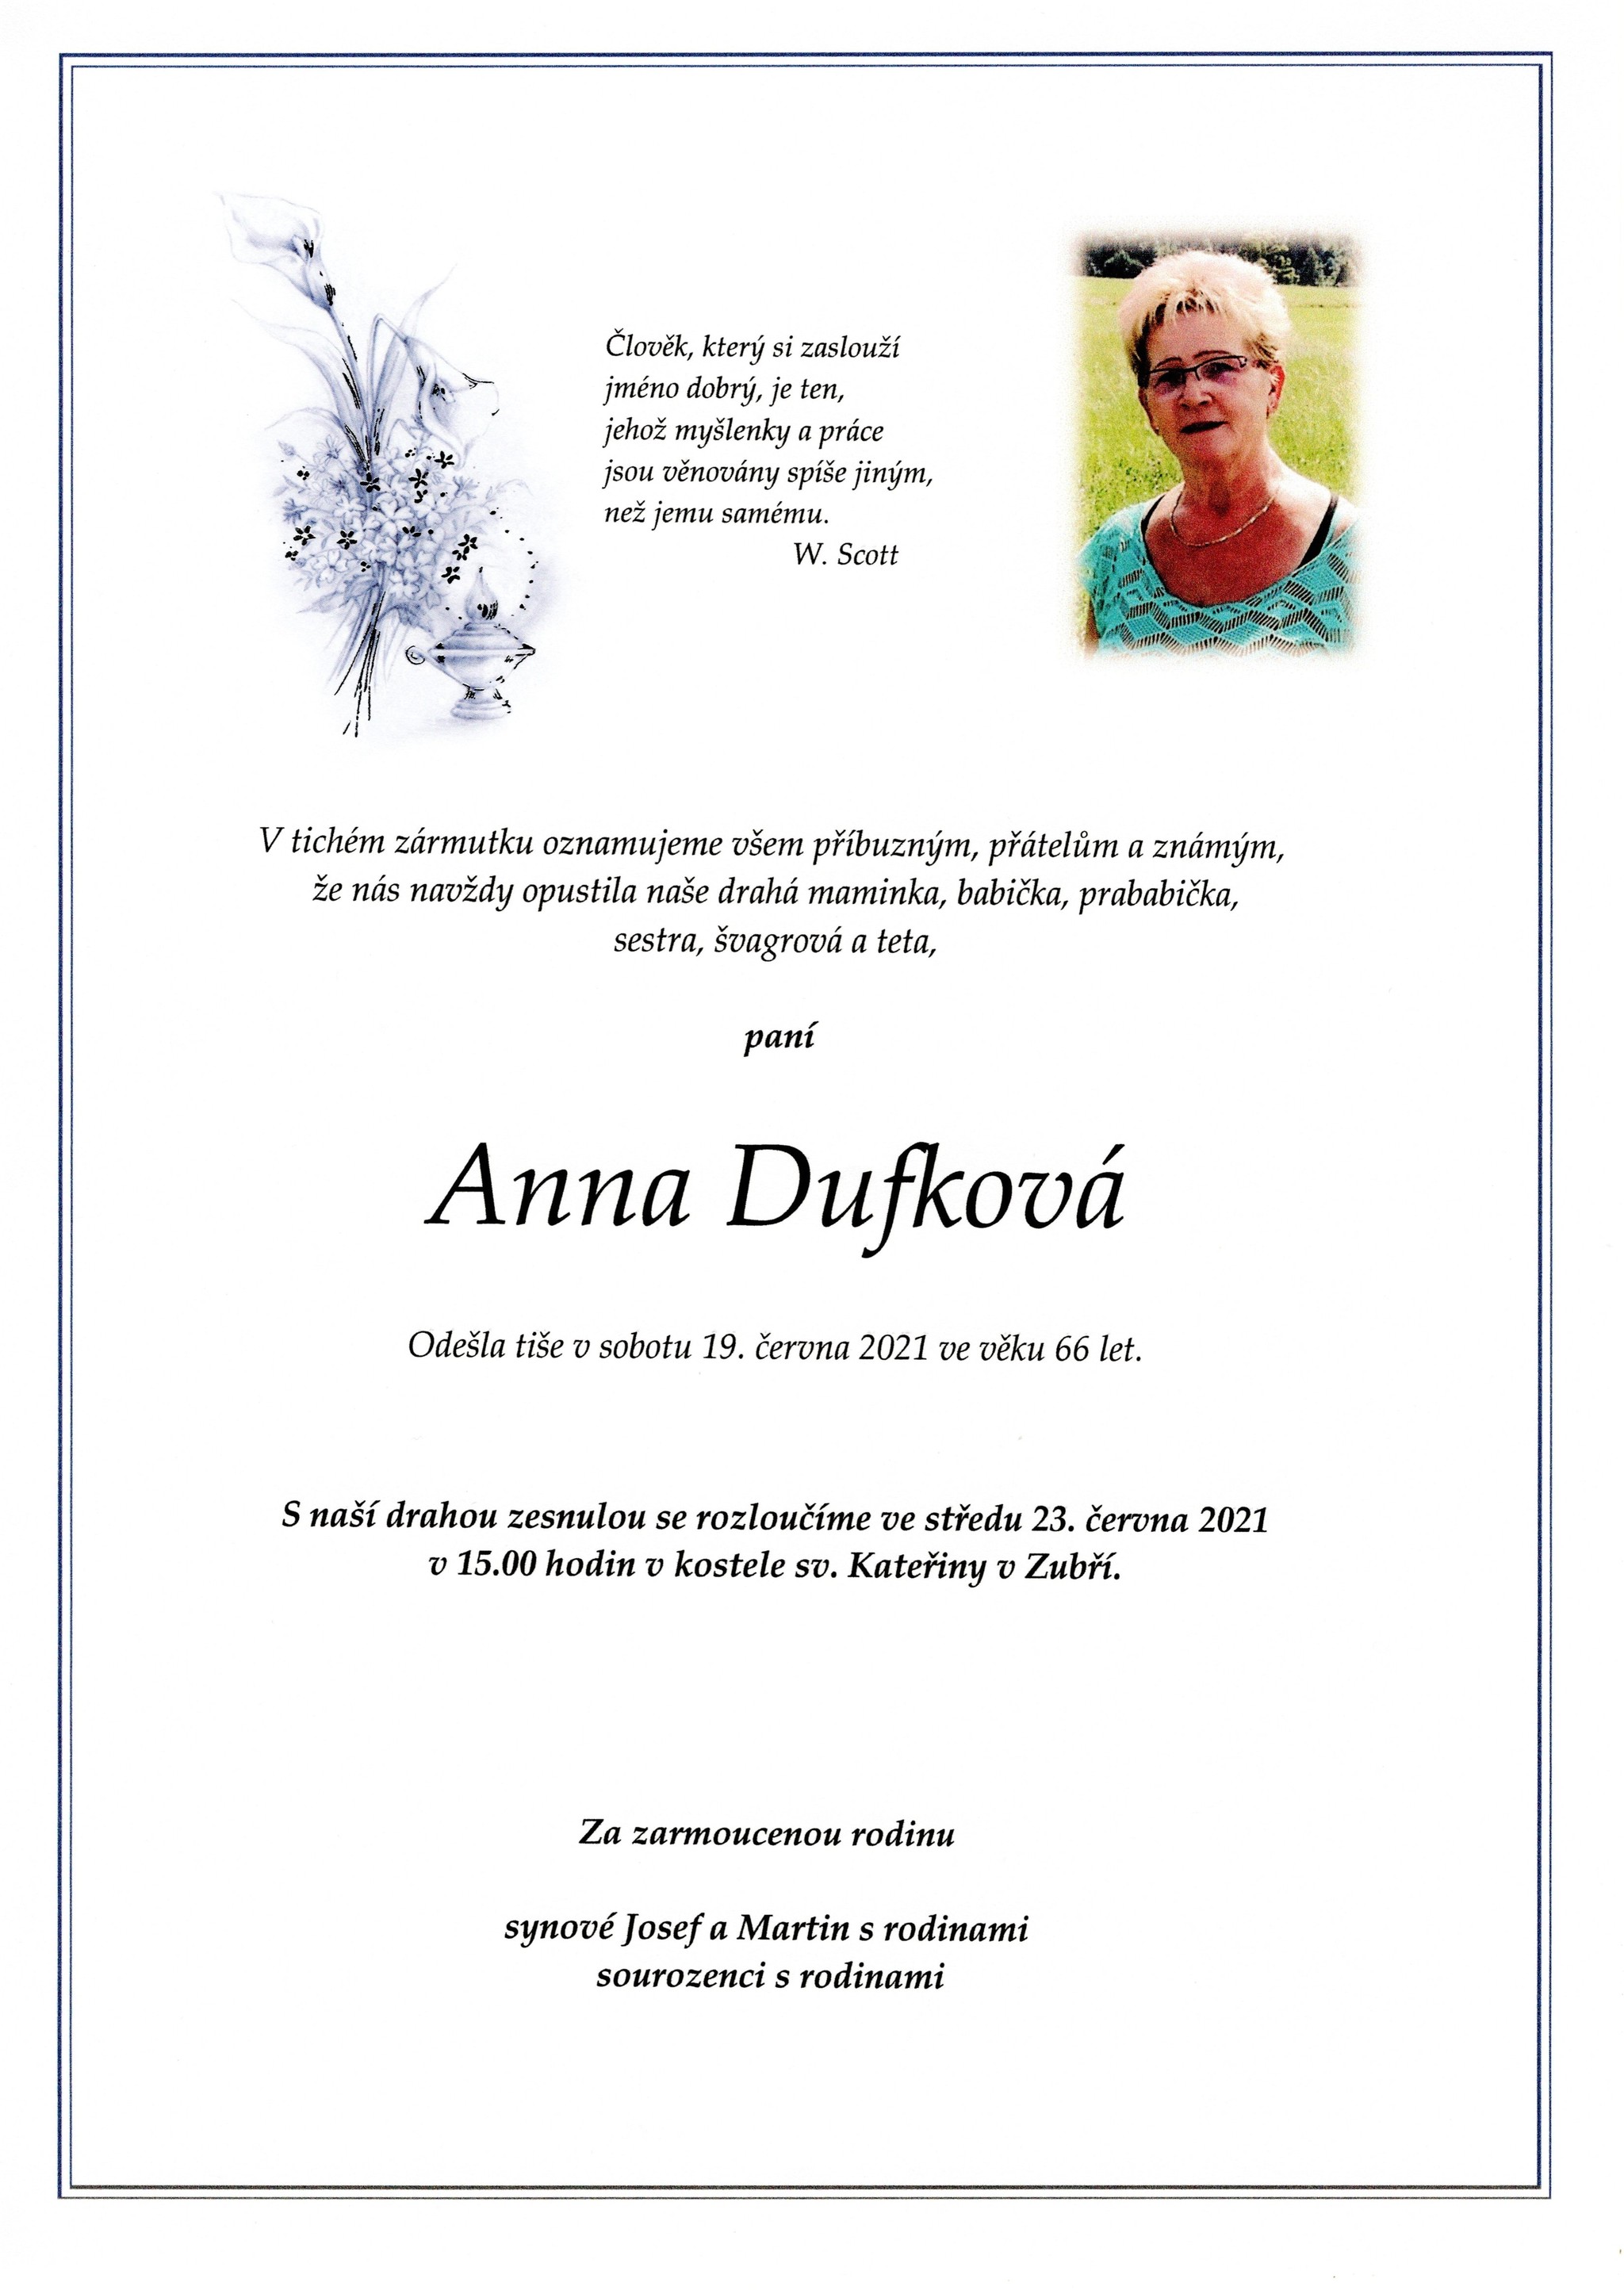 Anna Dufková